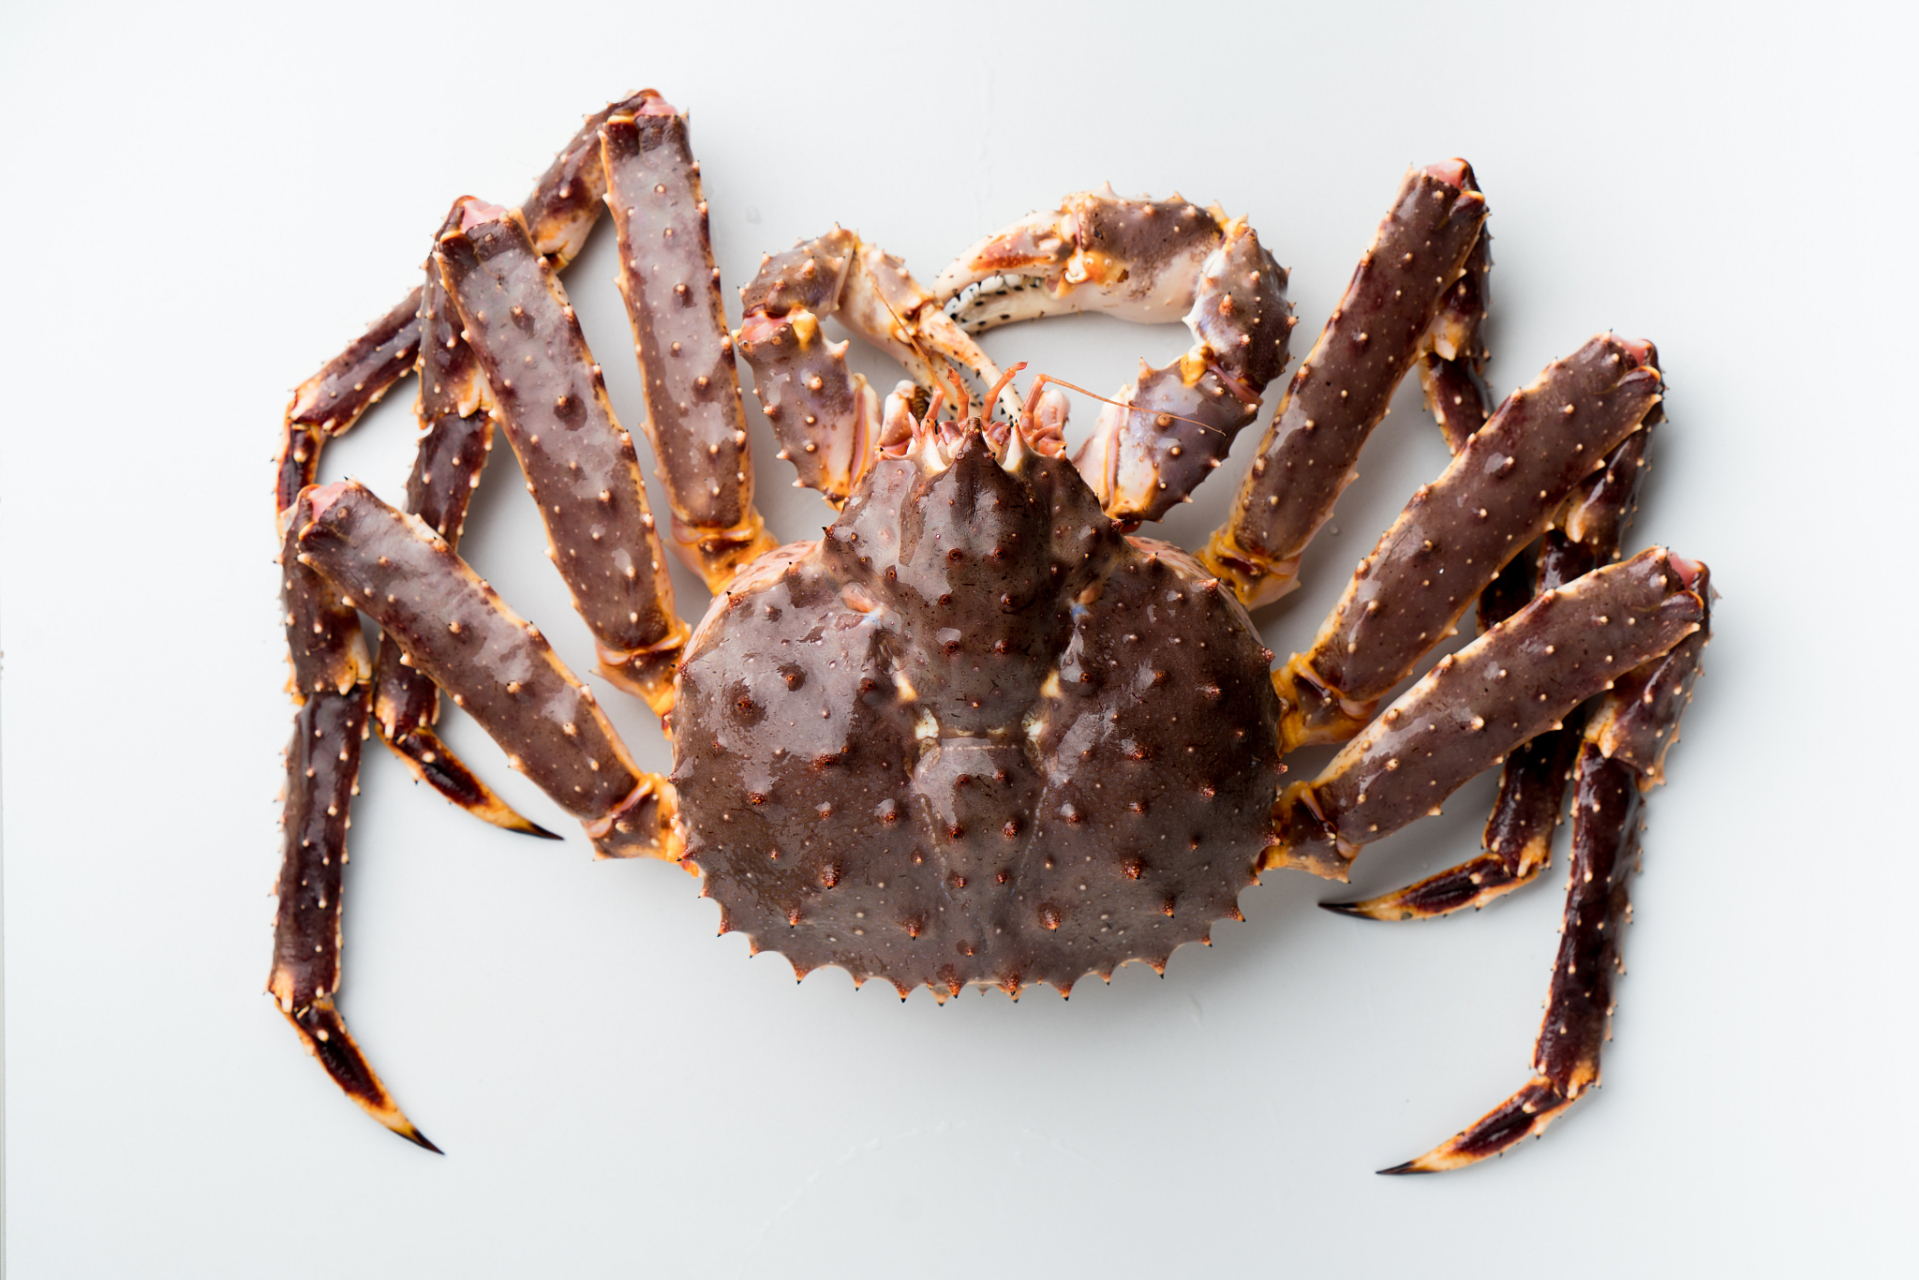 帝王蟹是美食中的佼佼者,选购时选活力强,壳体完整,触感沉重的